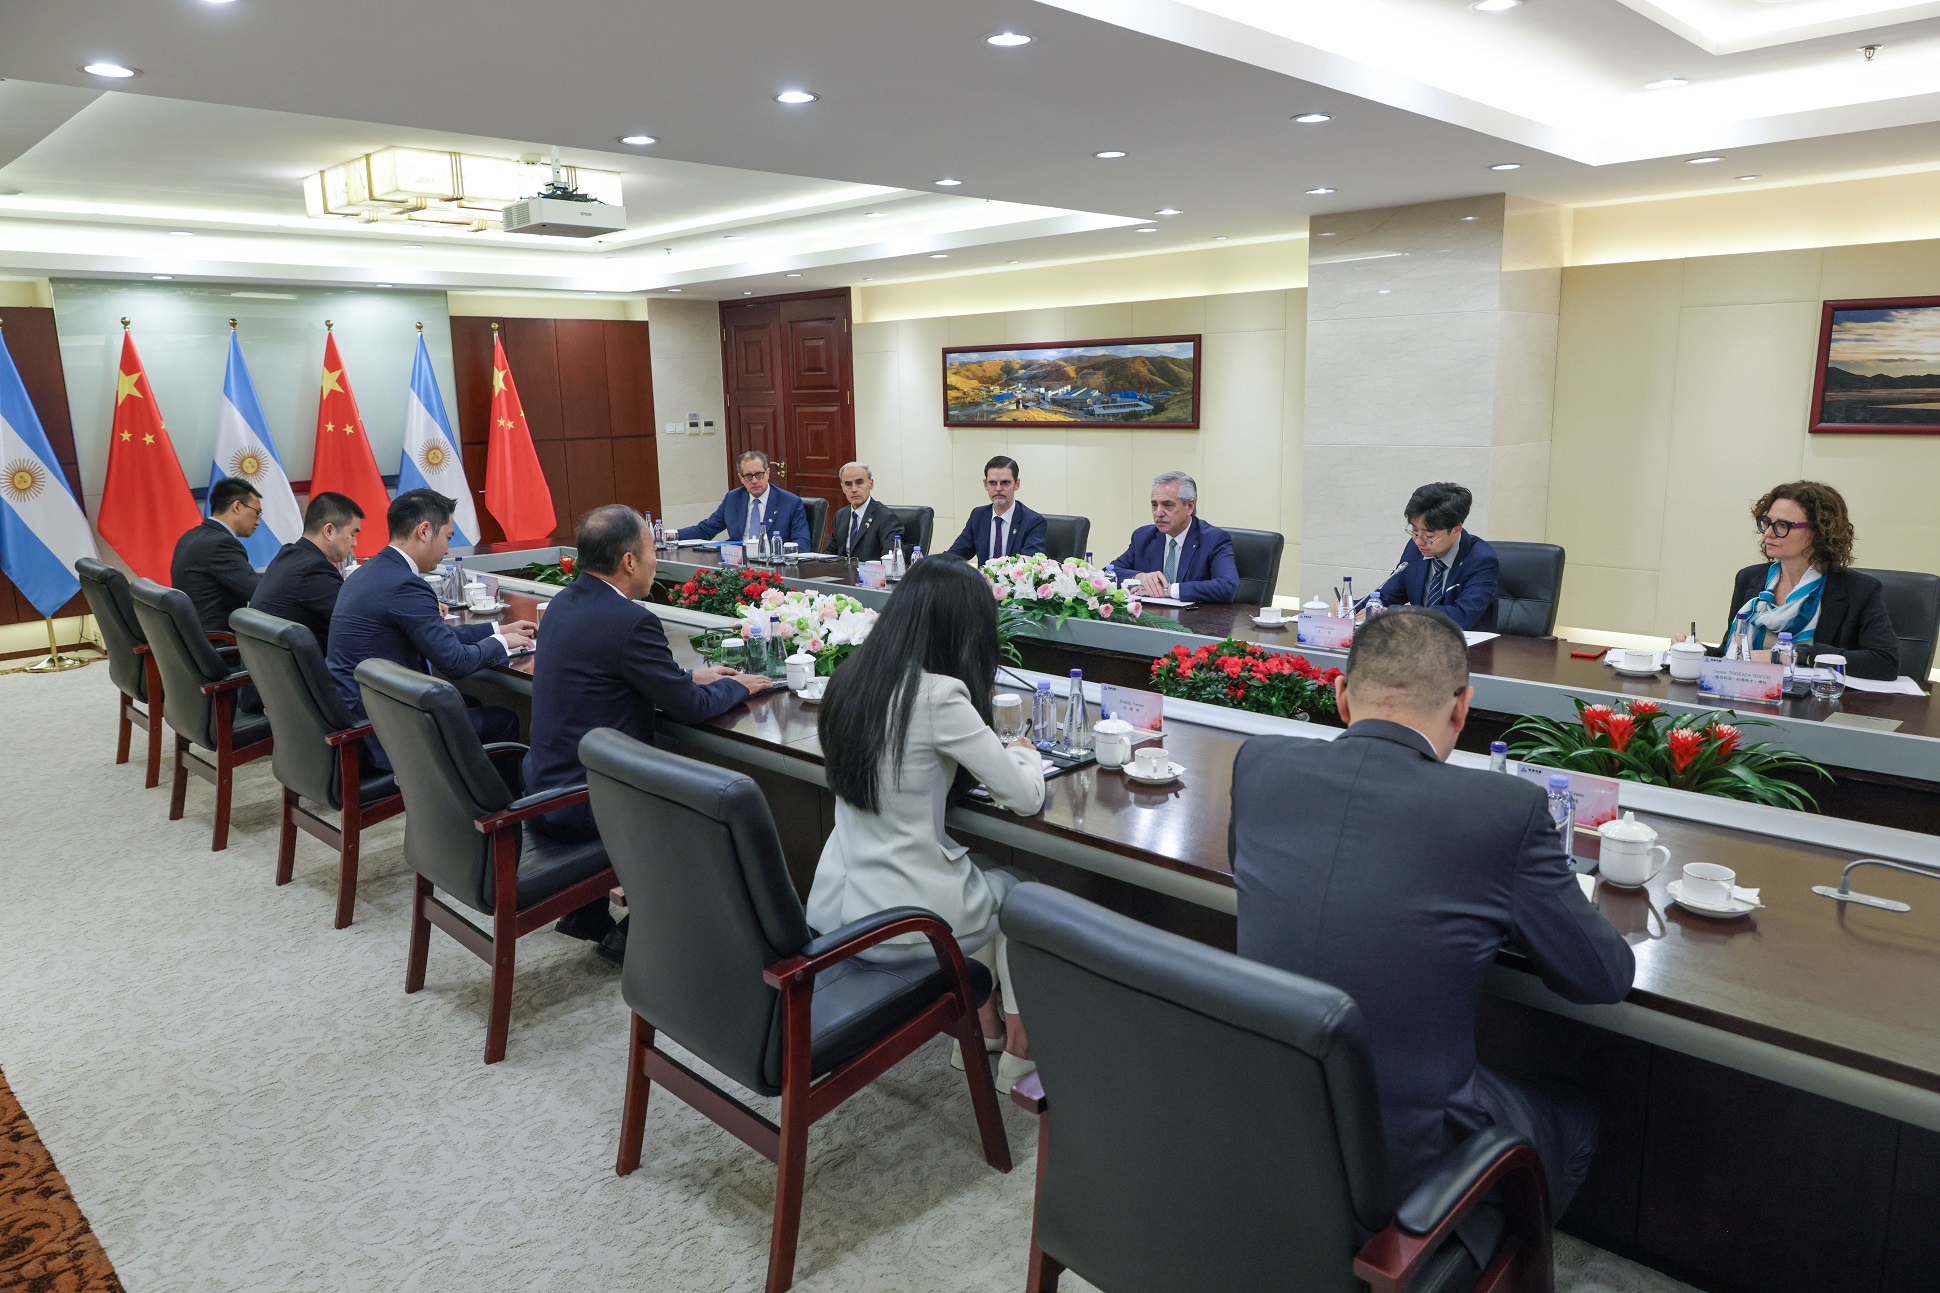 El presidente se reunió con autoridades de una empresa china que desarrolla proyectos de extracción de litio en Salta